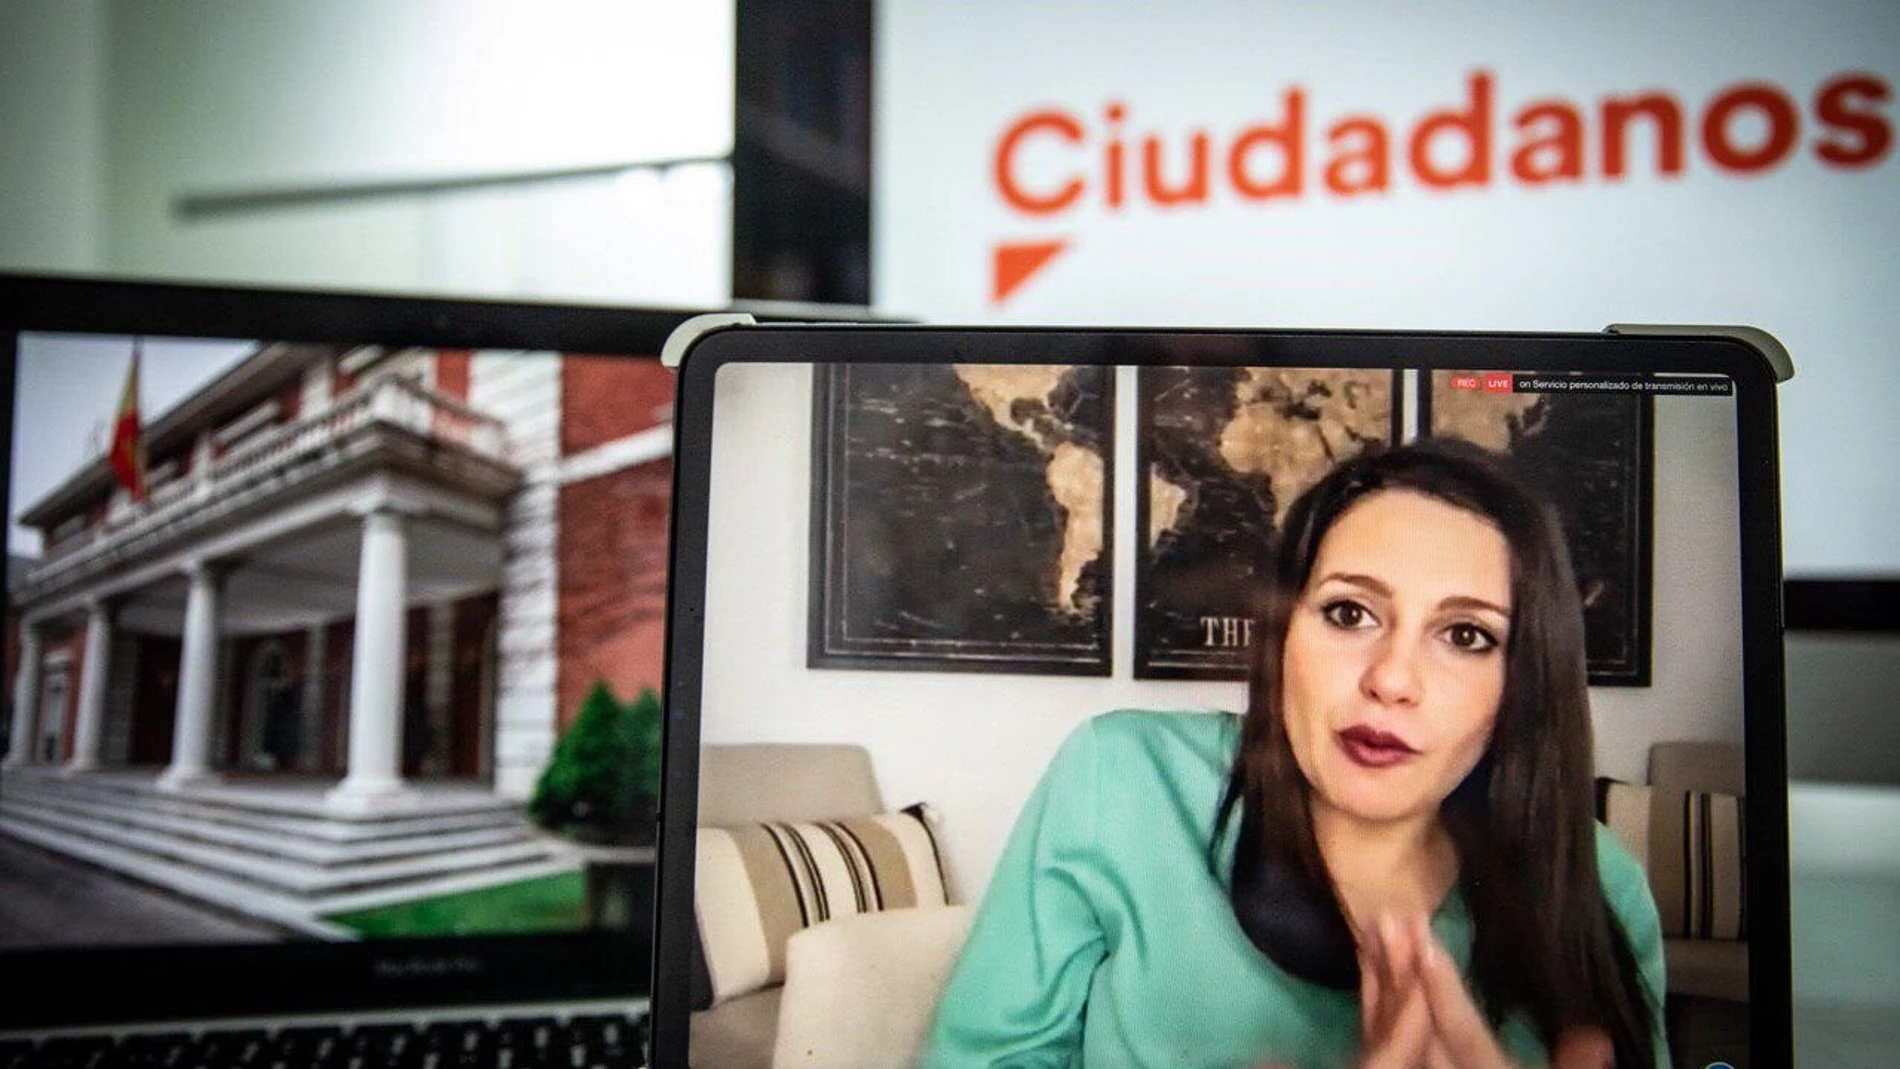 La presidenta de Ciudadanos y portavoz en el Congreso de los Diputados, Inés Arrimadas.CIUDADANOS16/04/2020